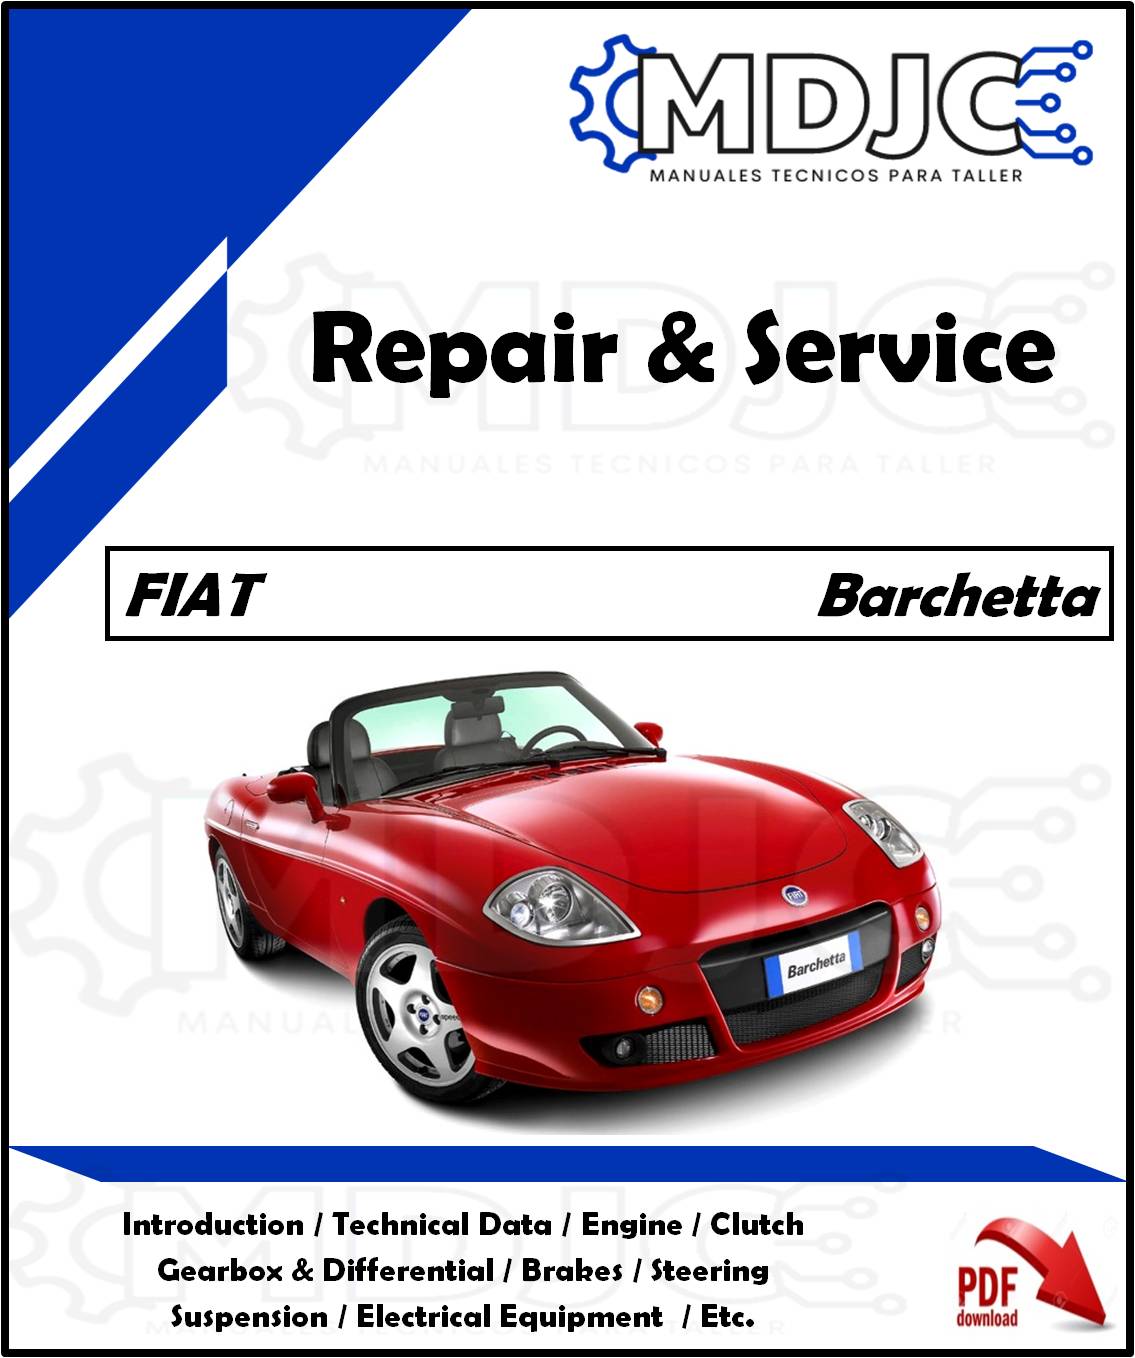 Manual de Taller (Reparación y Servicio) Fiat Barchetta